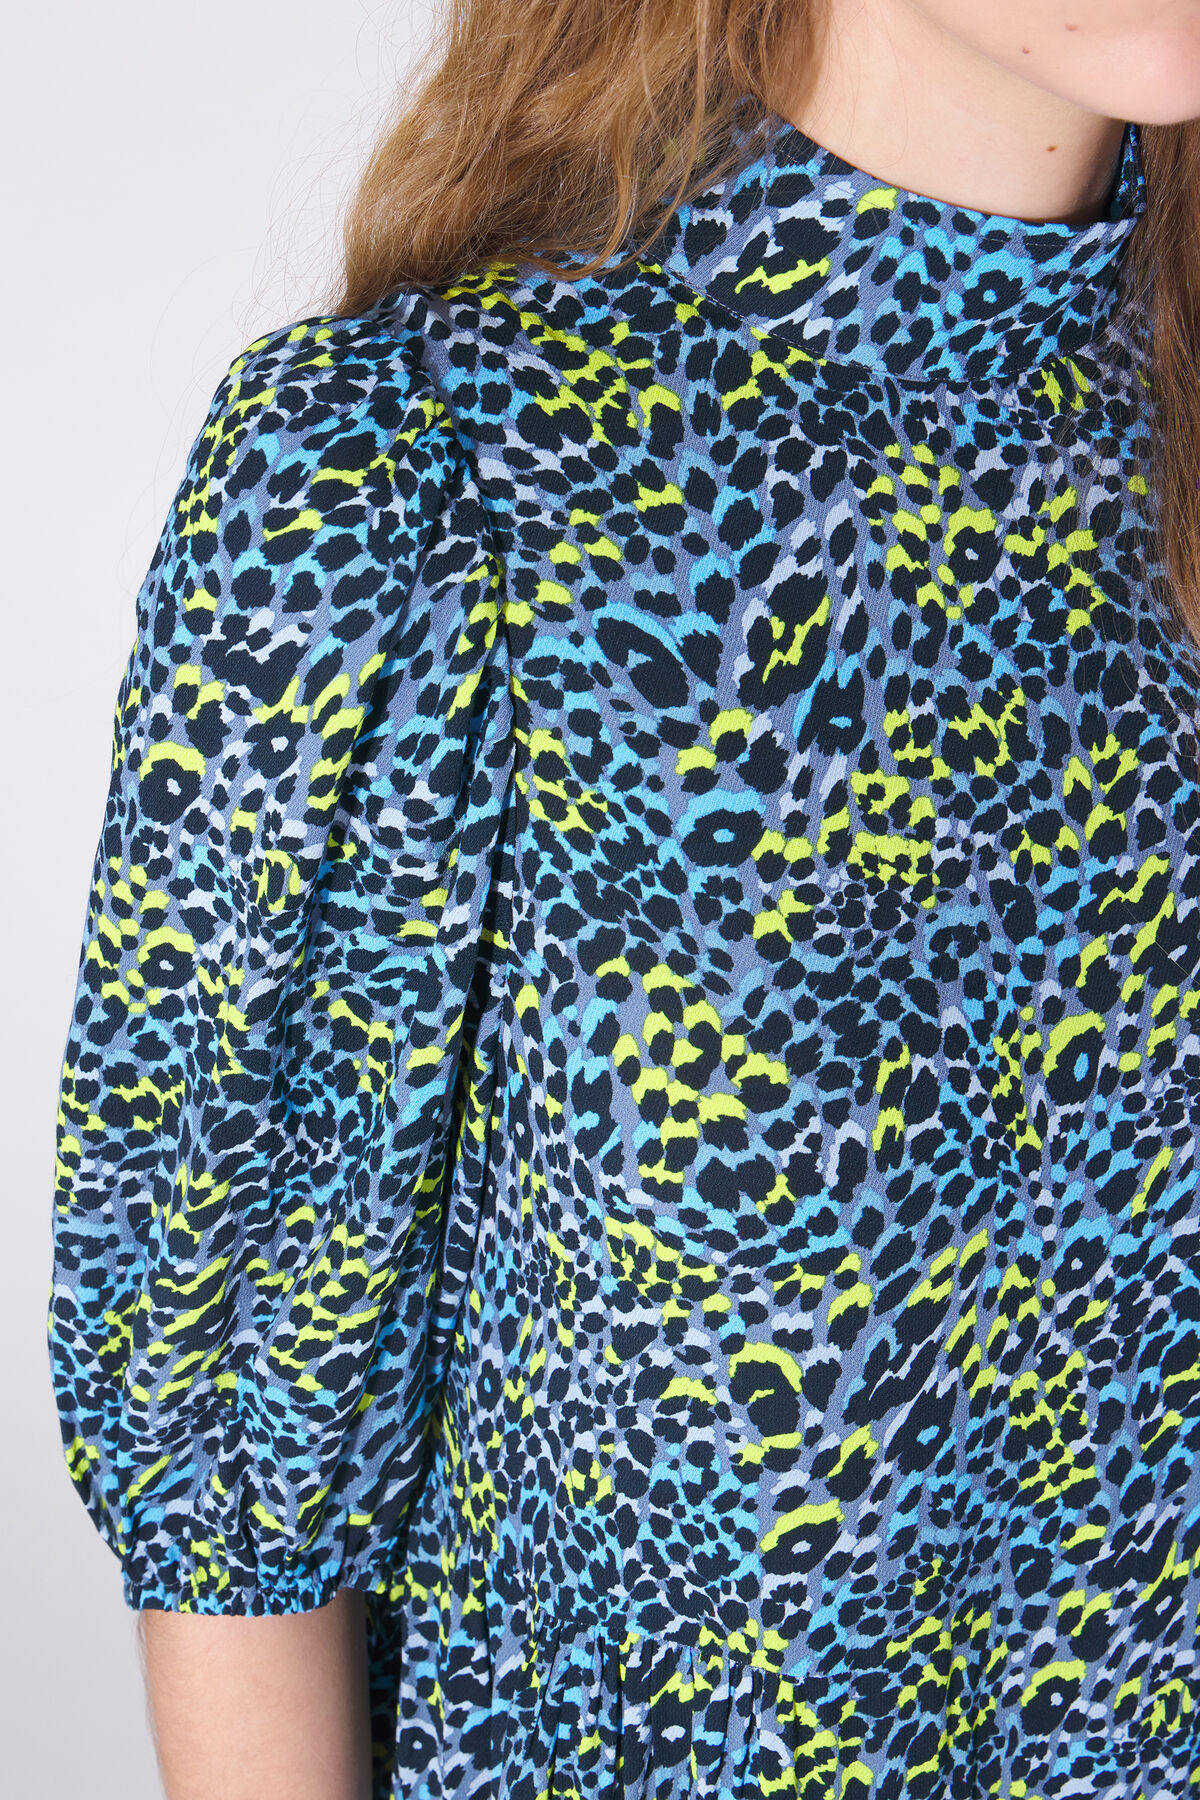 Spot My Baby - Green Leopard Print Midi Dress – DLSB